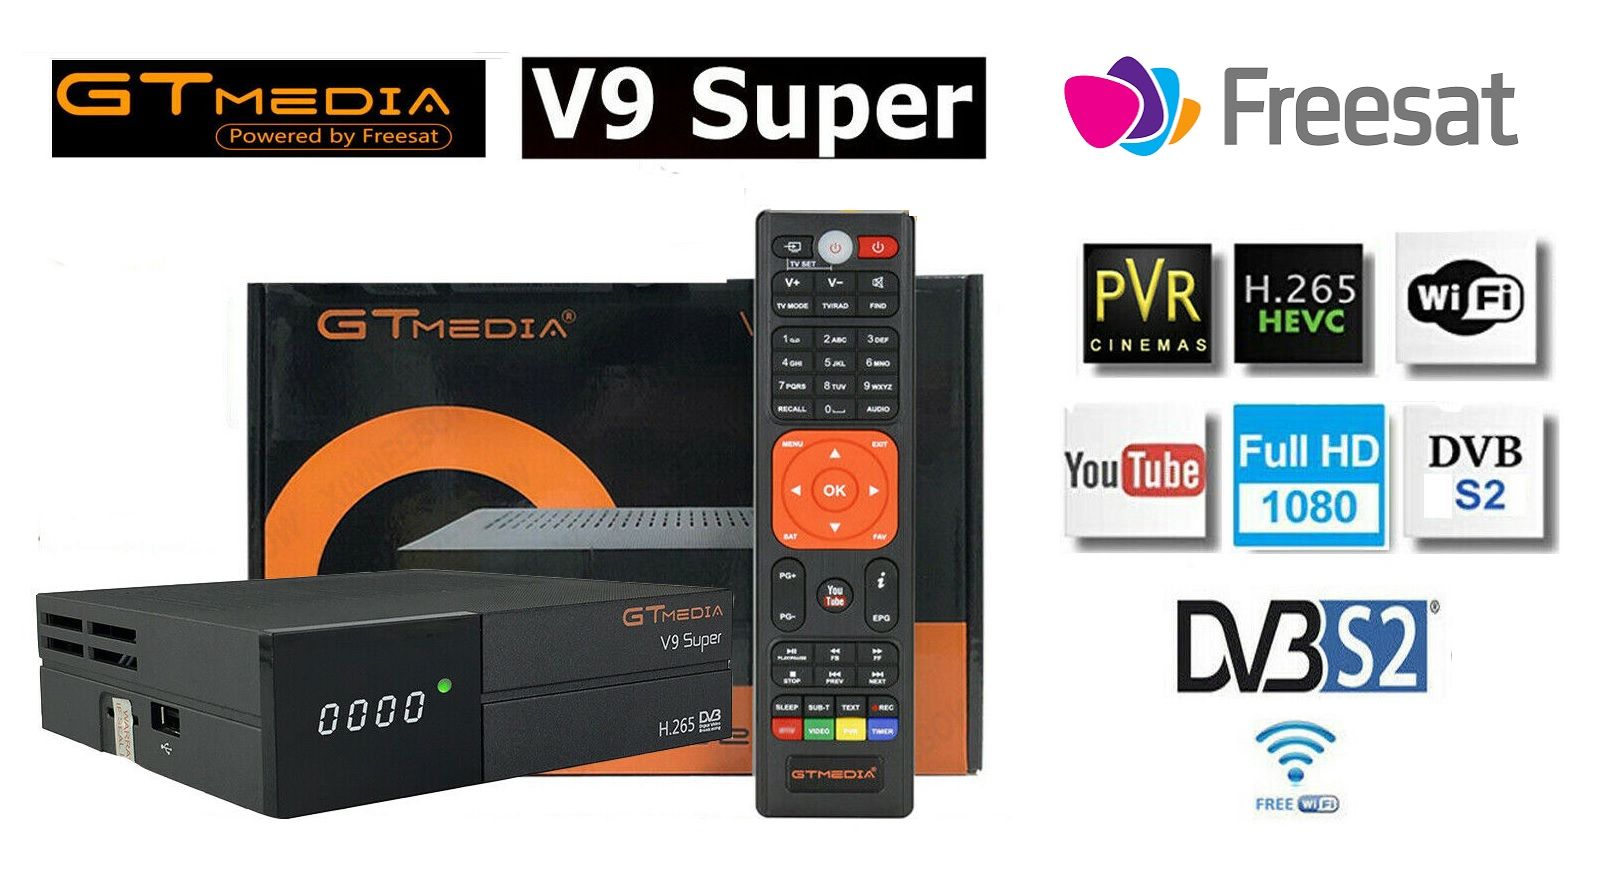 ¡Chollazo! Receptor TV digital FreeSat GTMEDIA V9 Super por sólo 33,99€ en Amazon con este cupón